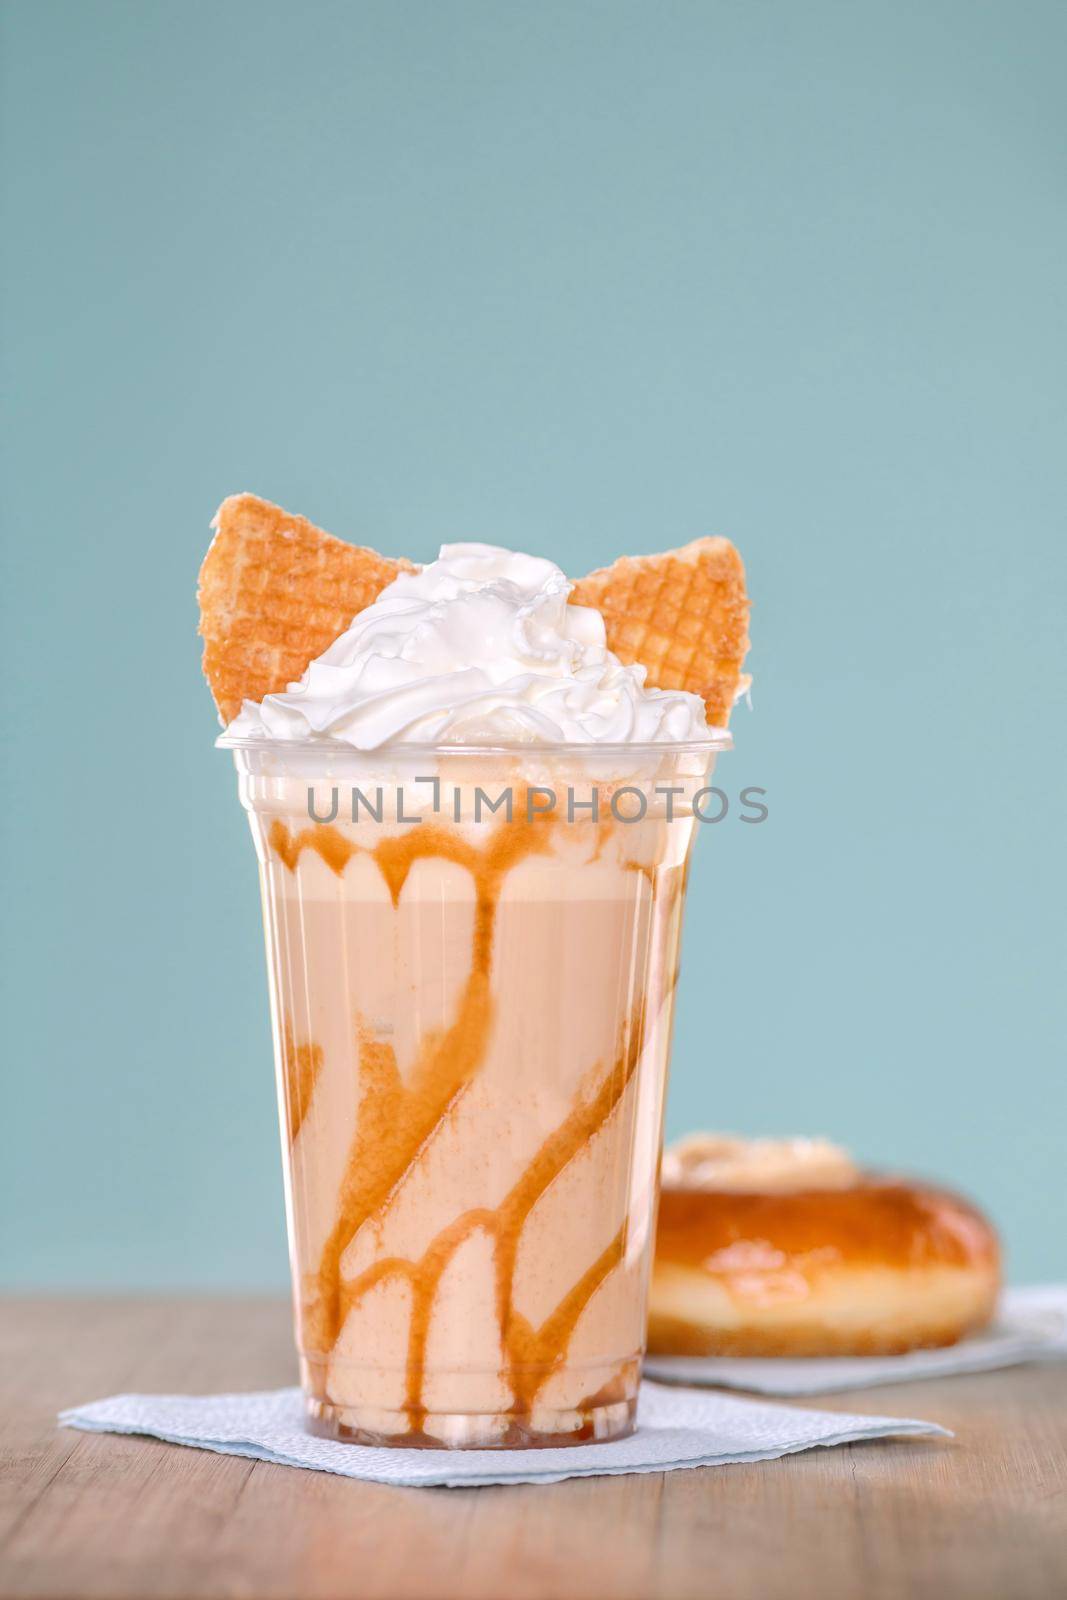 Milkshake with whipped cream by Demkat